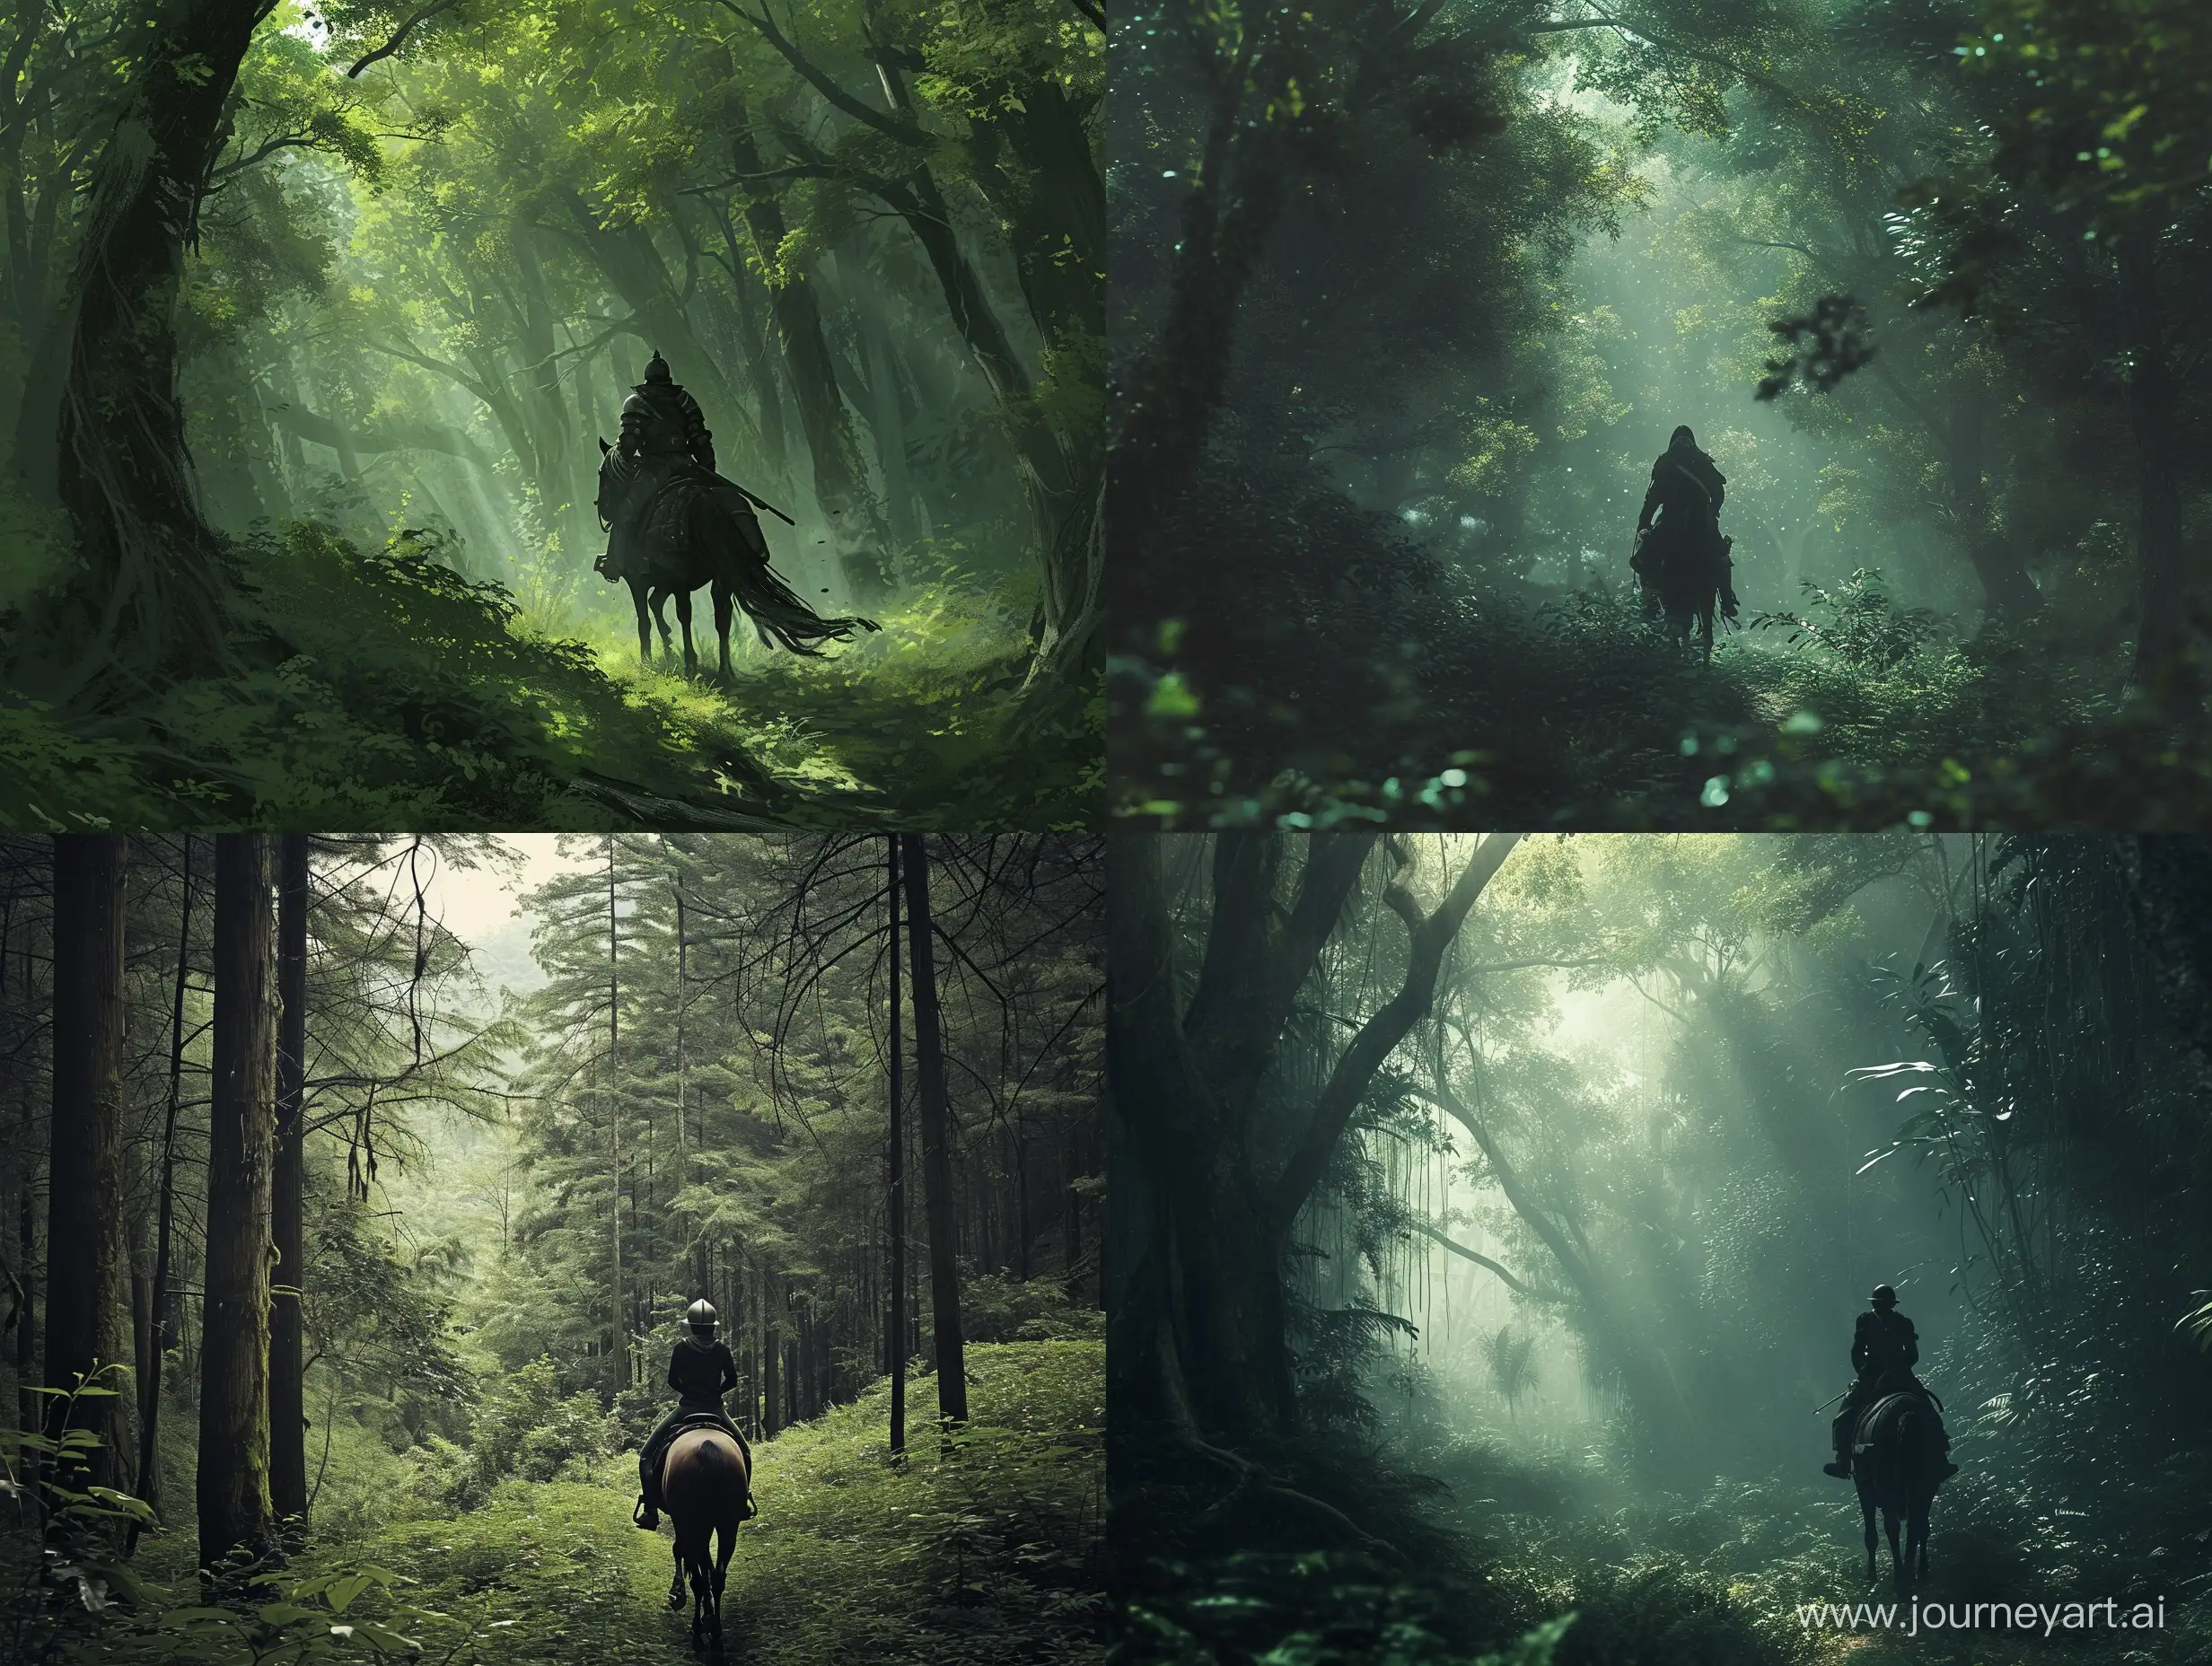 Lone-Rider-Exploring-Enchanted-Woodland-on-Horseback